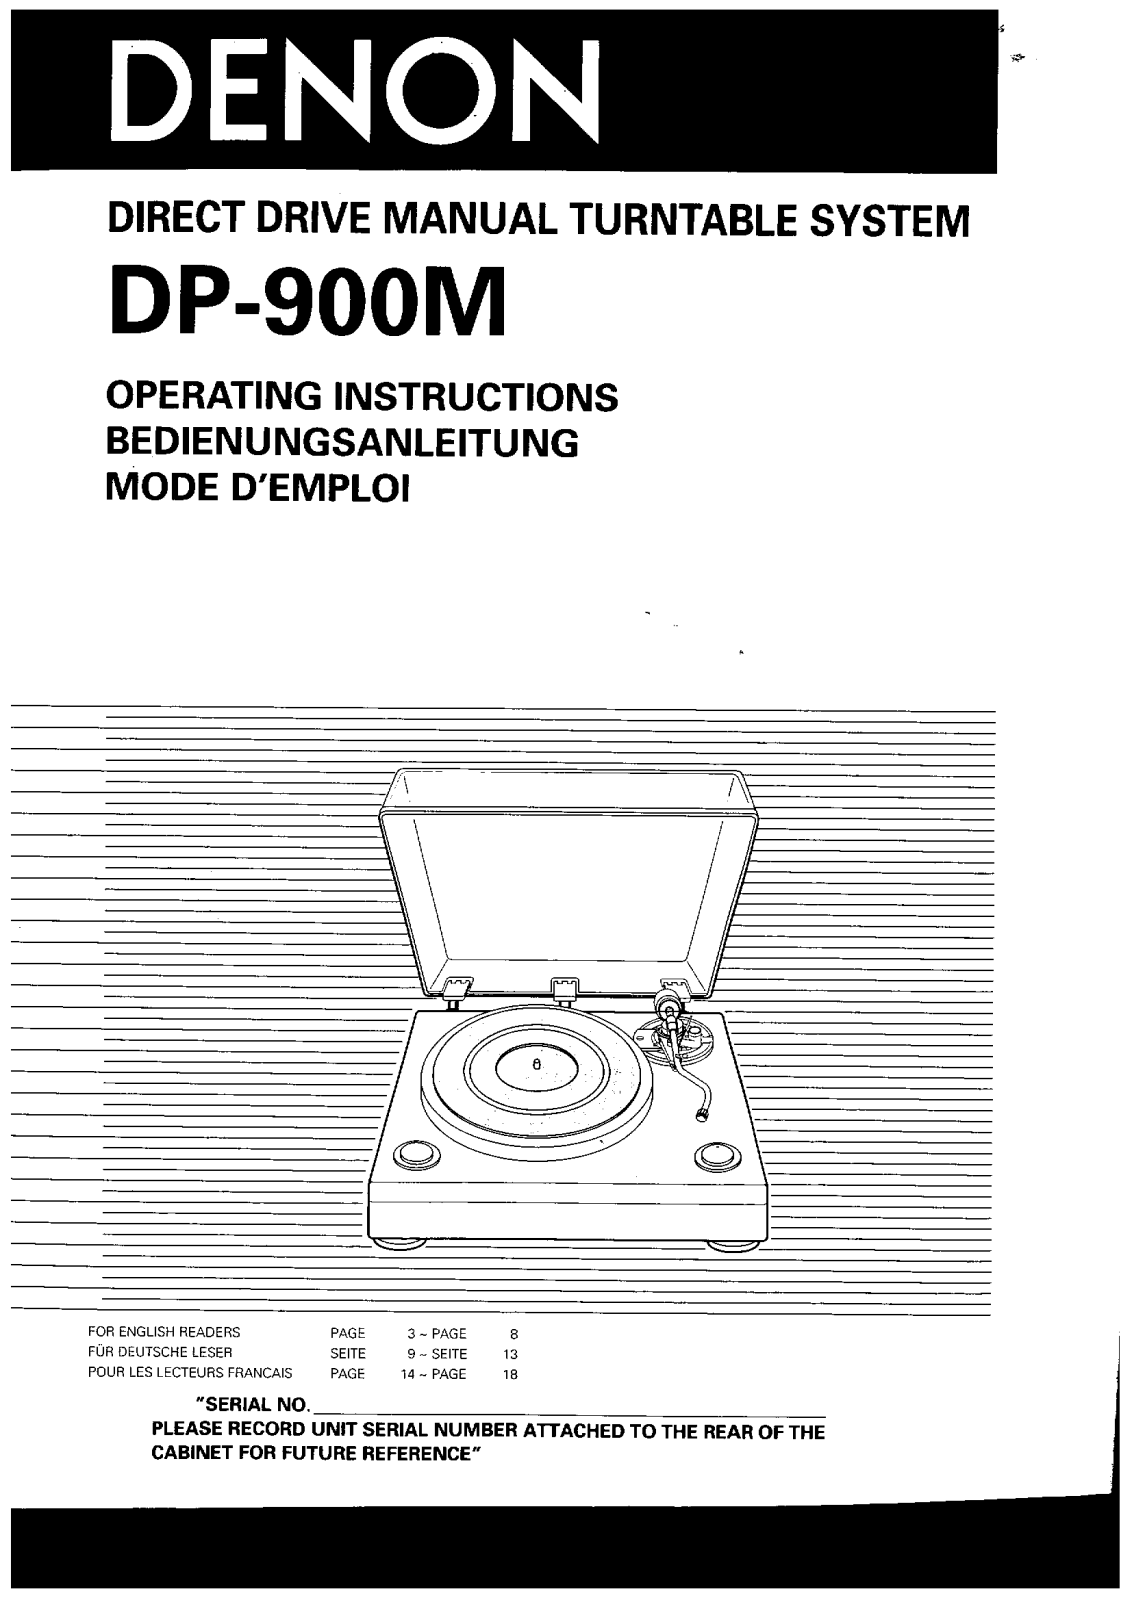 Denon DP-900M Owner's Manual